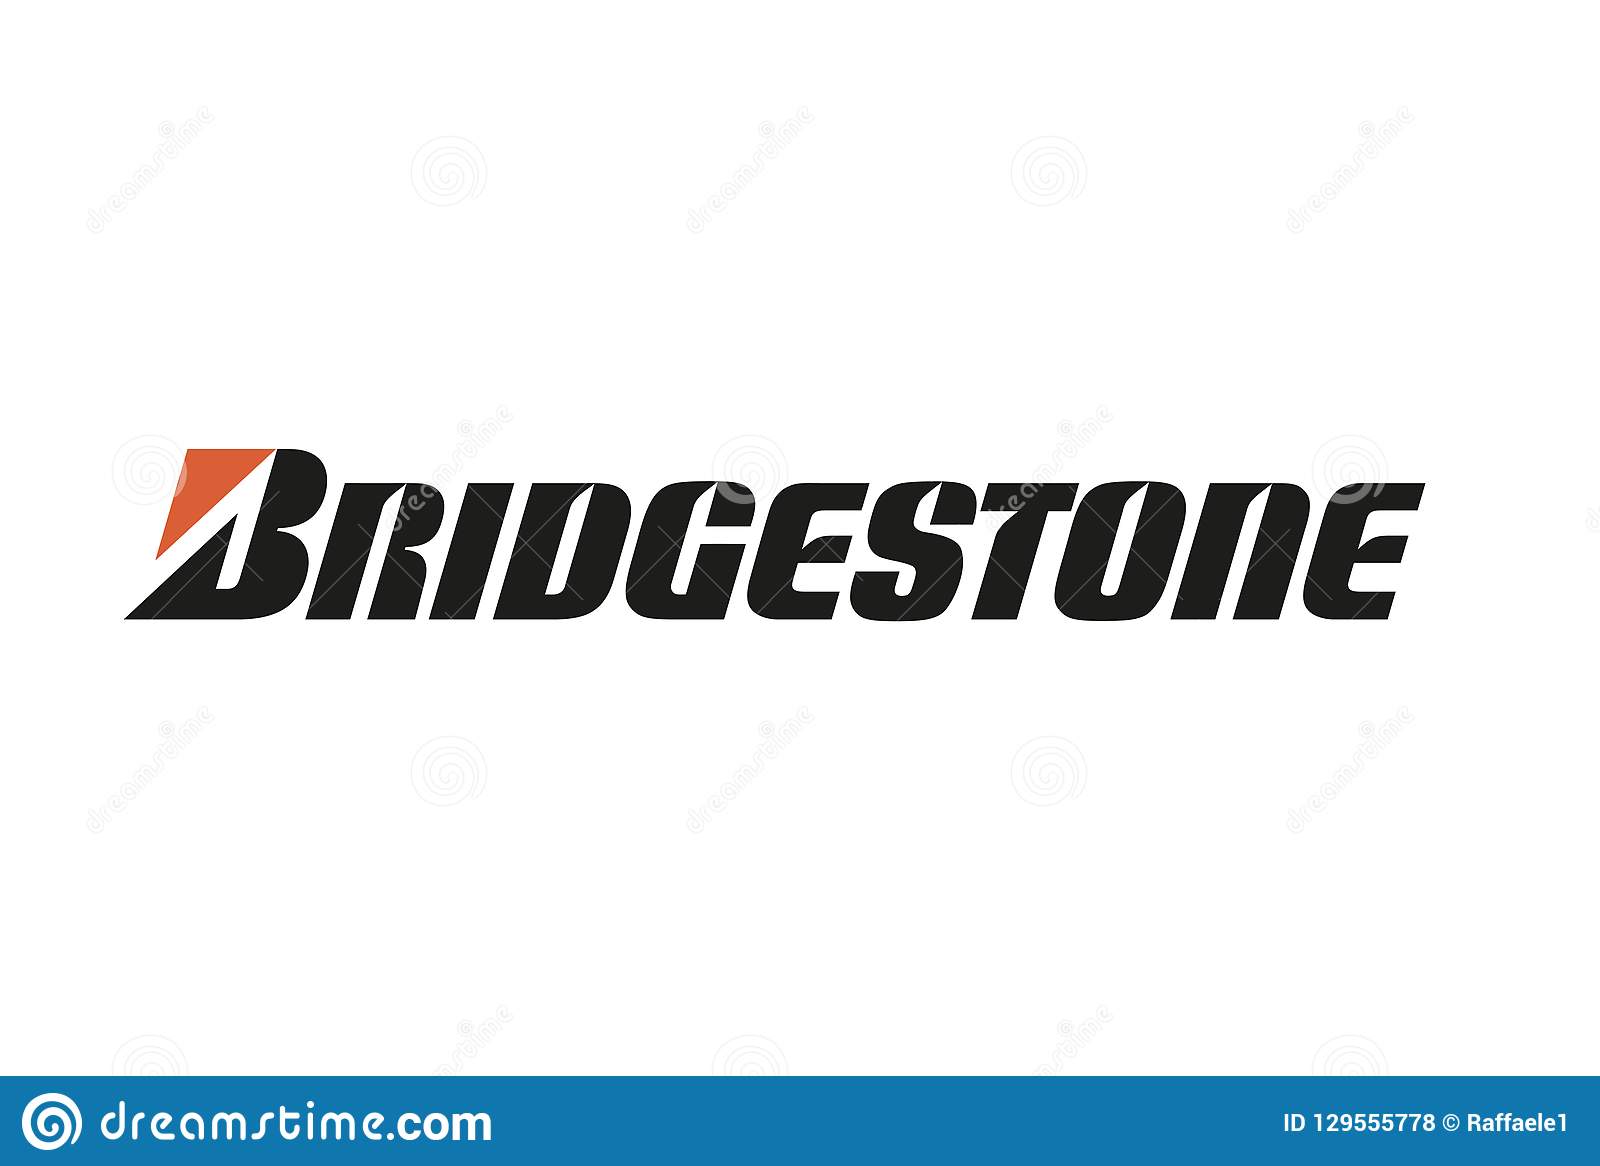 Bridgestone представляє оновлений логотип